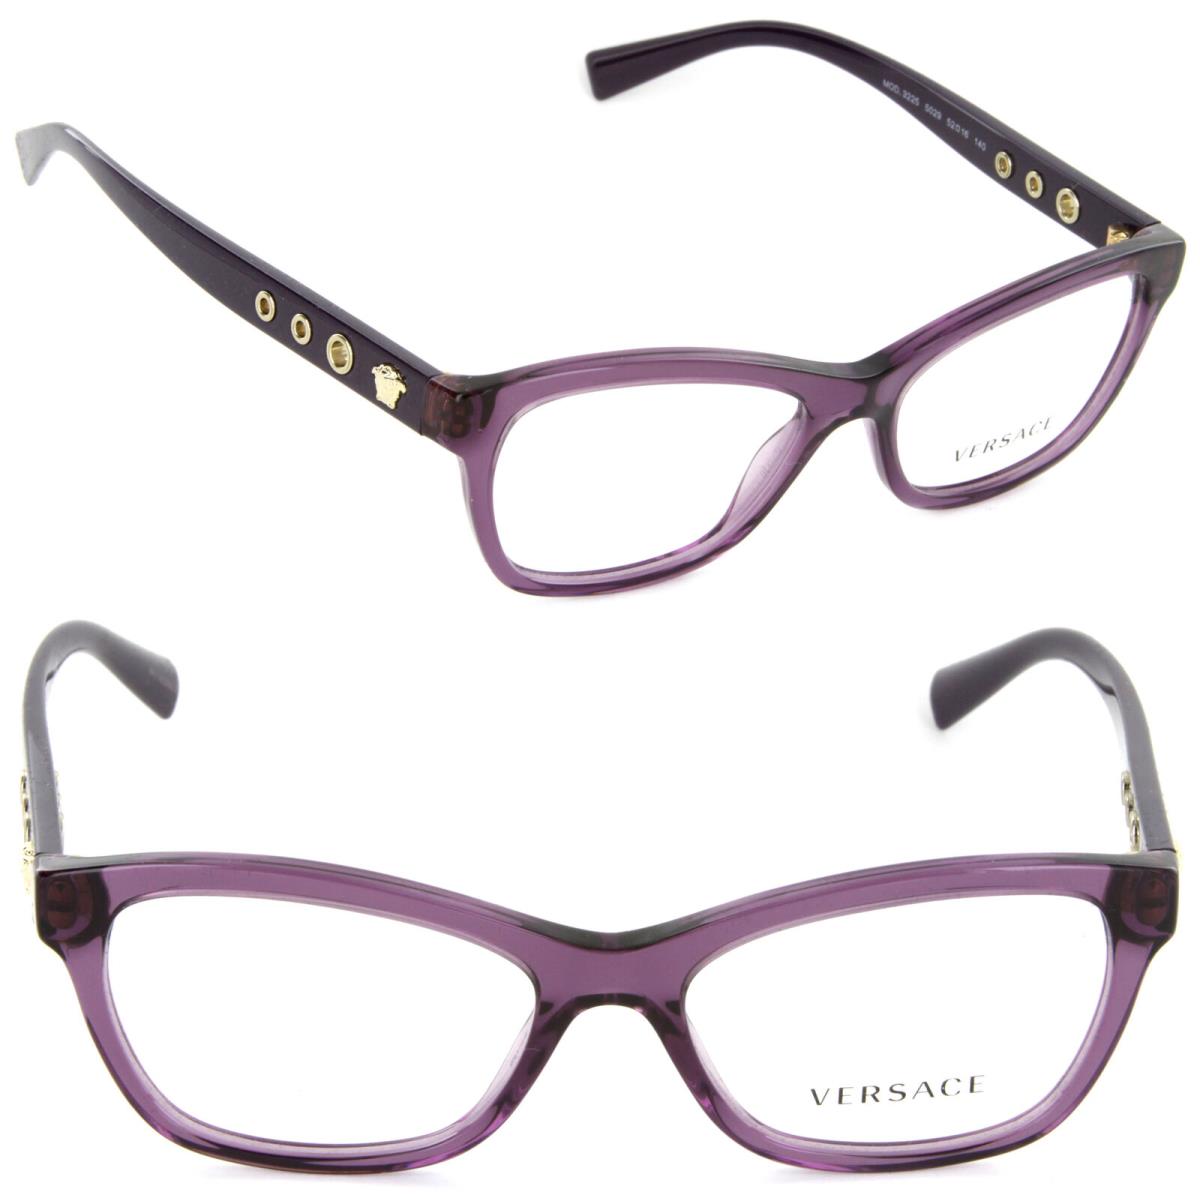 Versace VE 3225 5029 52mm Eyeglasses Transparent Violet / Demo Lens 52-16-140 - Frame: Transparent Violet